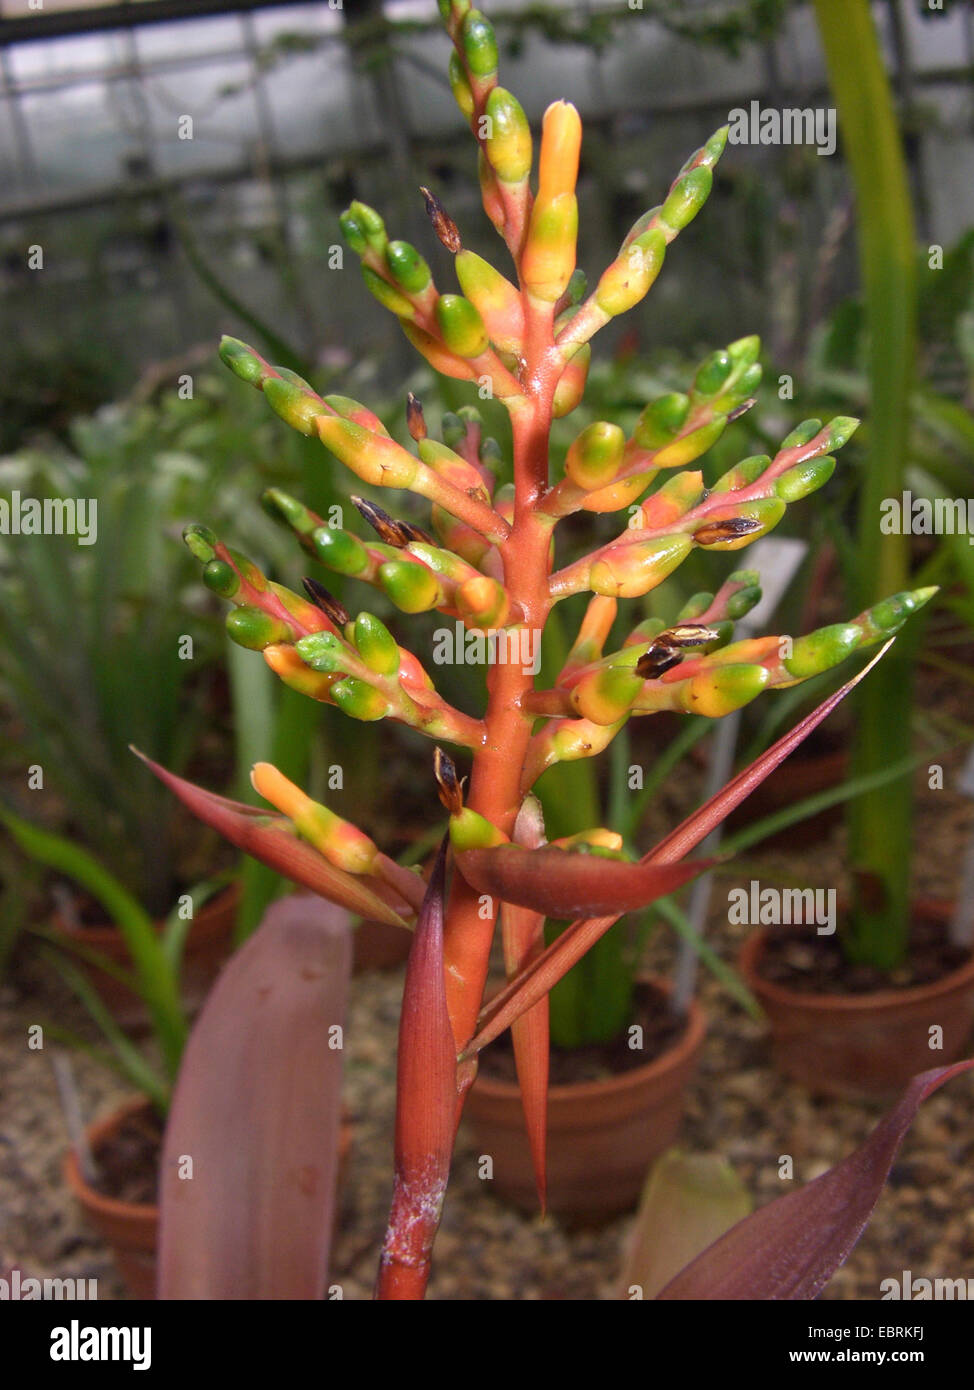 Aechmea (Aechmea penduliflora), inflorescence Stock Photo